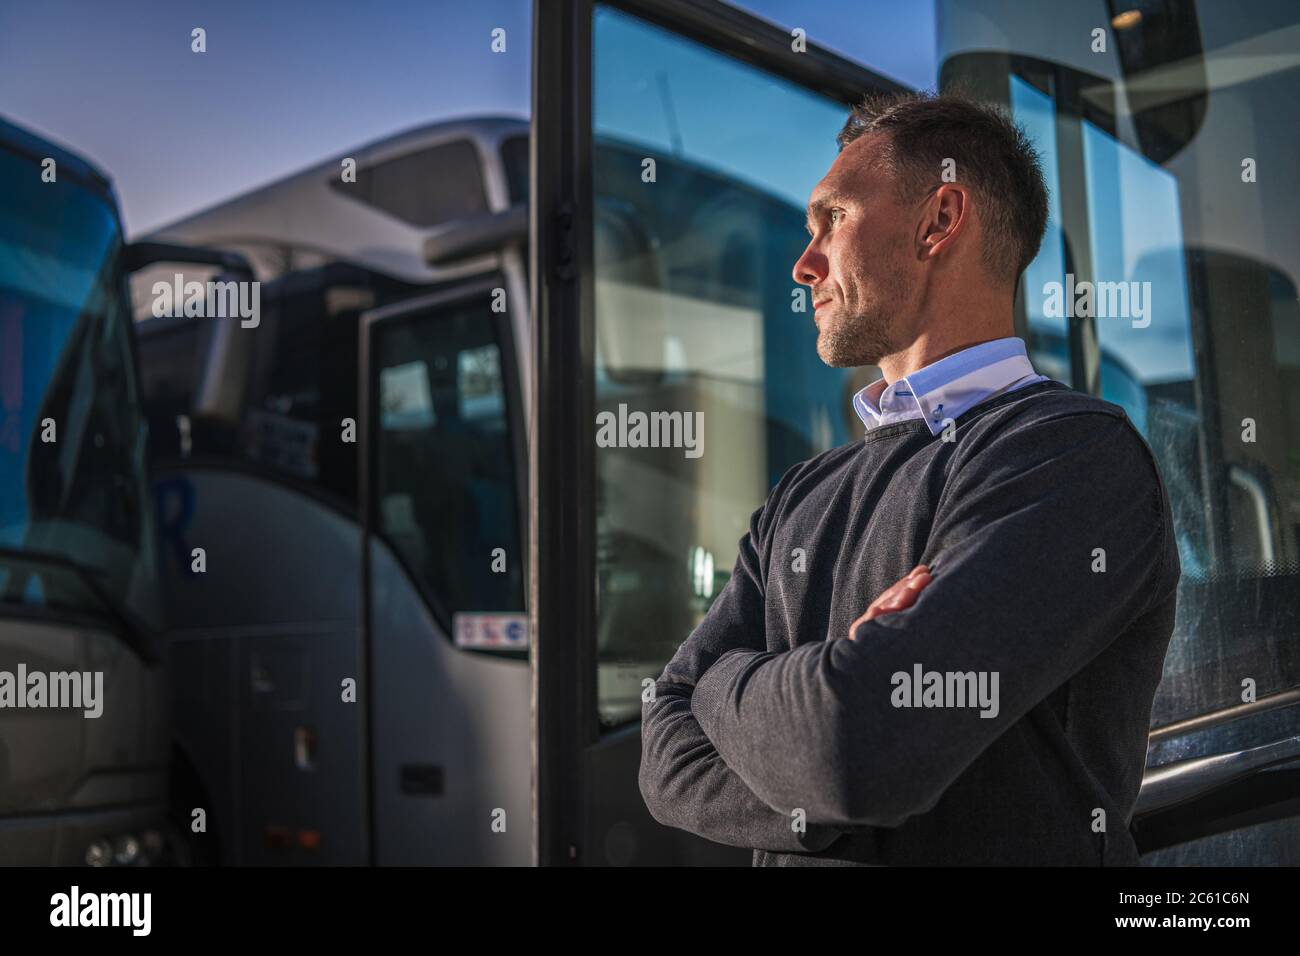 Shuttle Busse Öffentliche Verkehrsmittel Firmeninhaber stolz vor seinen Fahrzeugen. Thema Transportbranche. Stockfoto